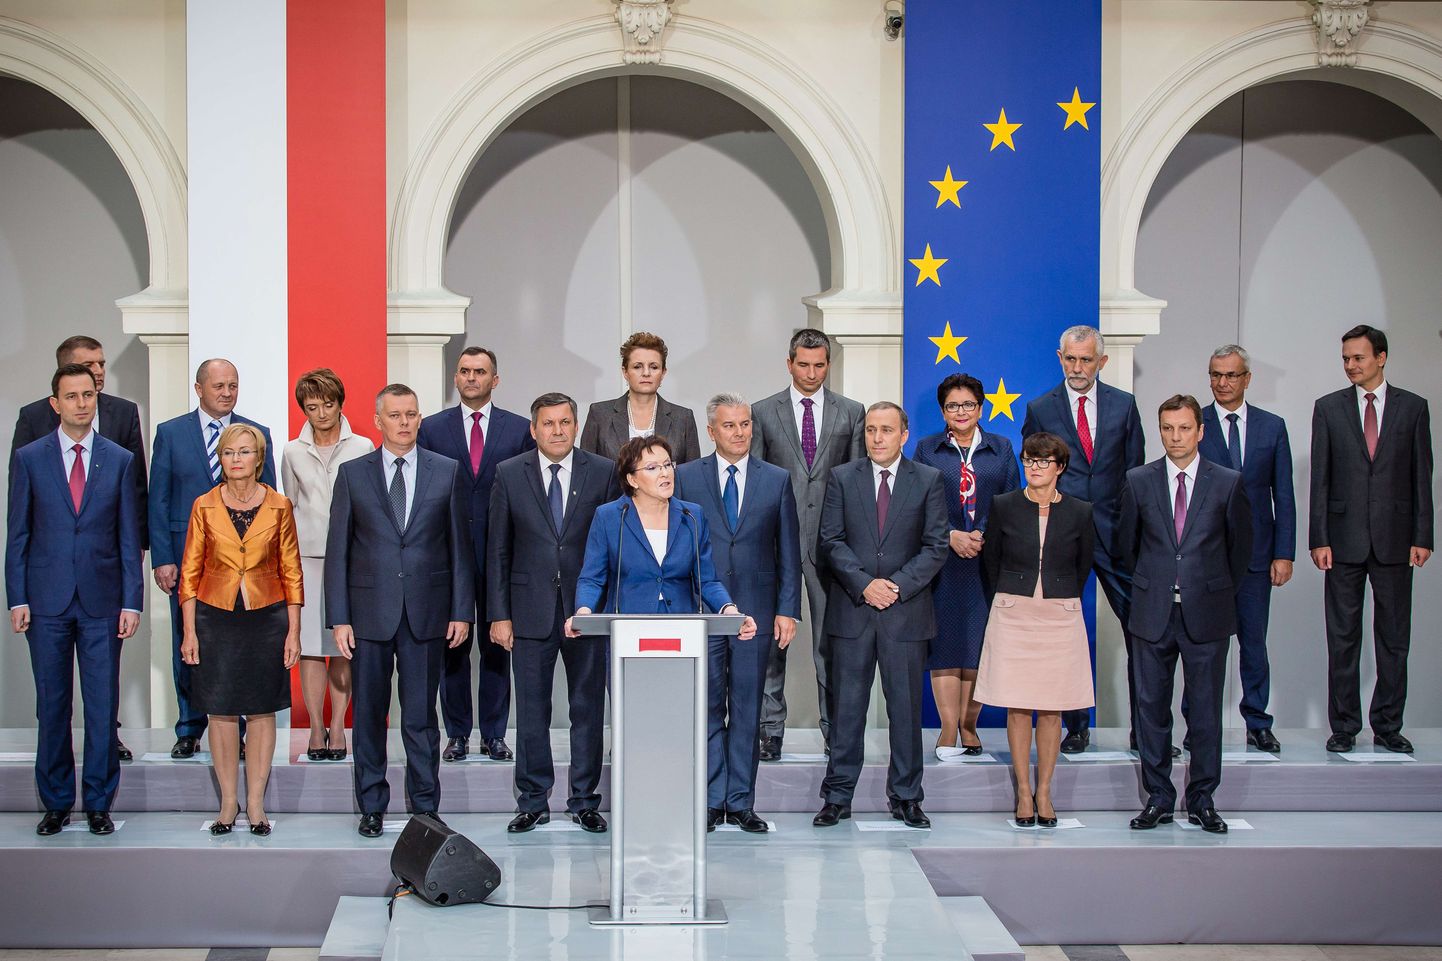 Poola uut valitsust moodustav Ewa Kopacz (ees keskel) tutvustas täna ministrite kandidaate. Valitsus peaks saama ametisse kinnitatud esmaspäeval.